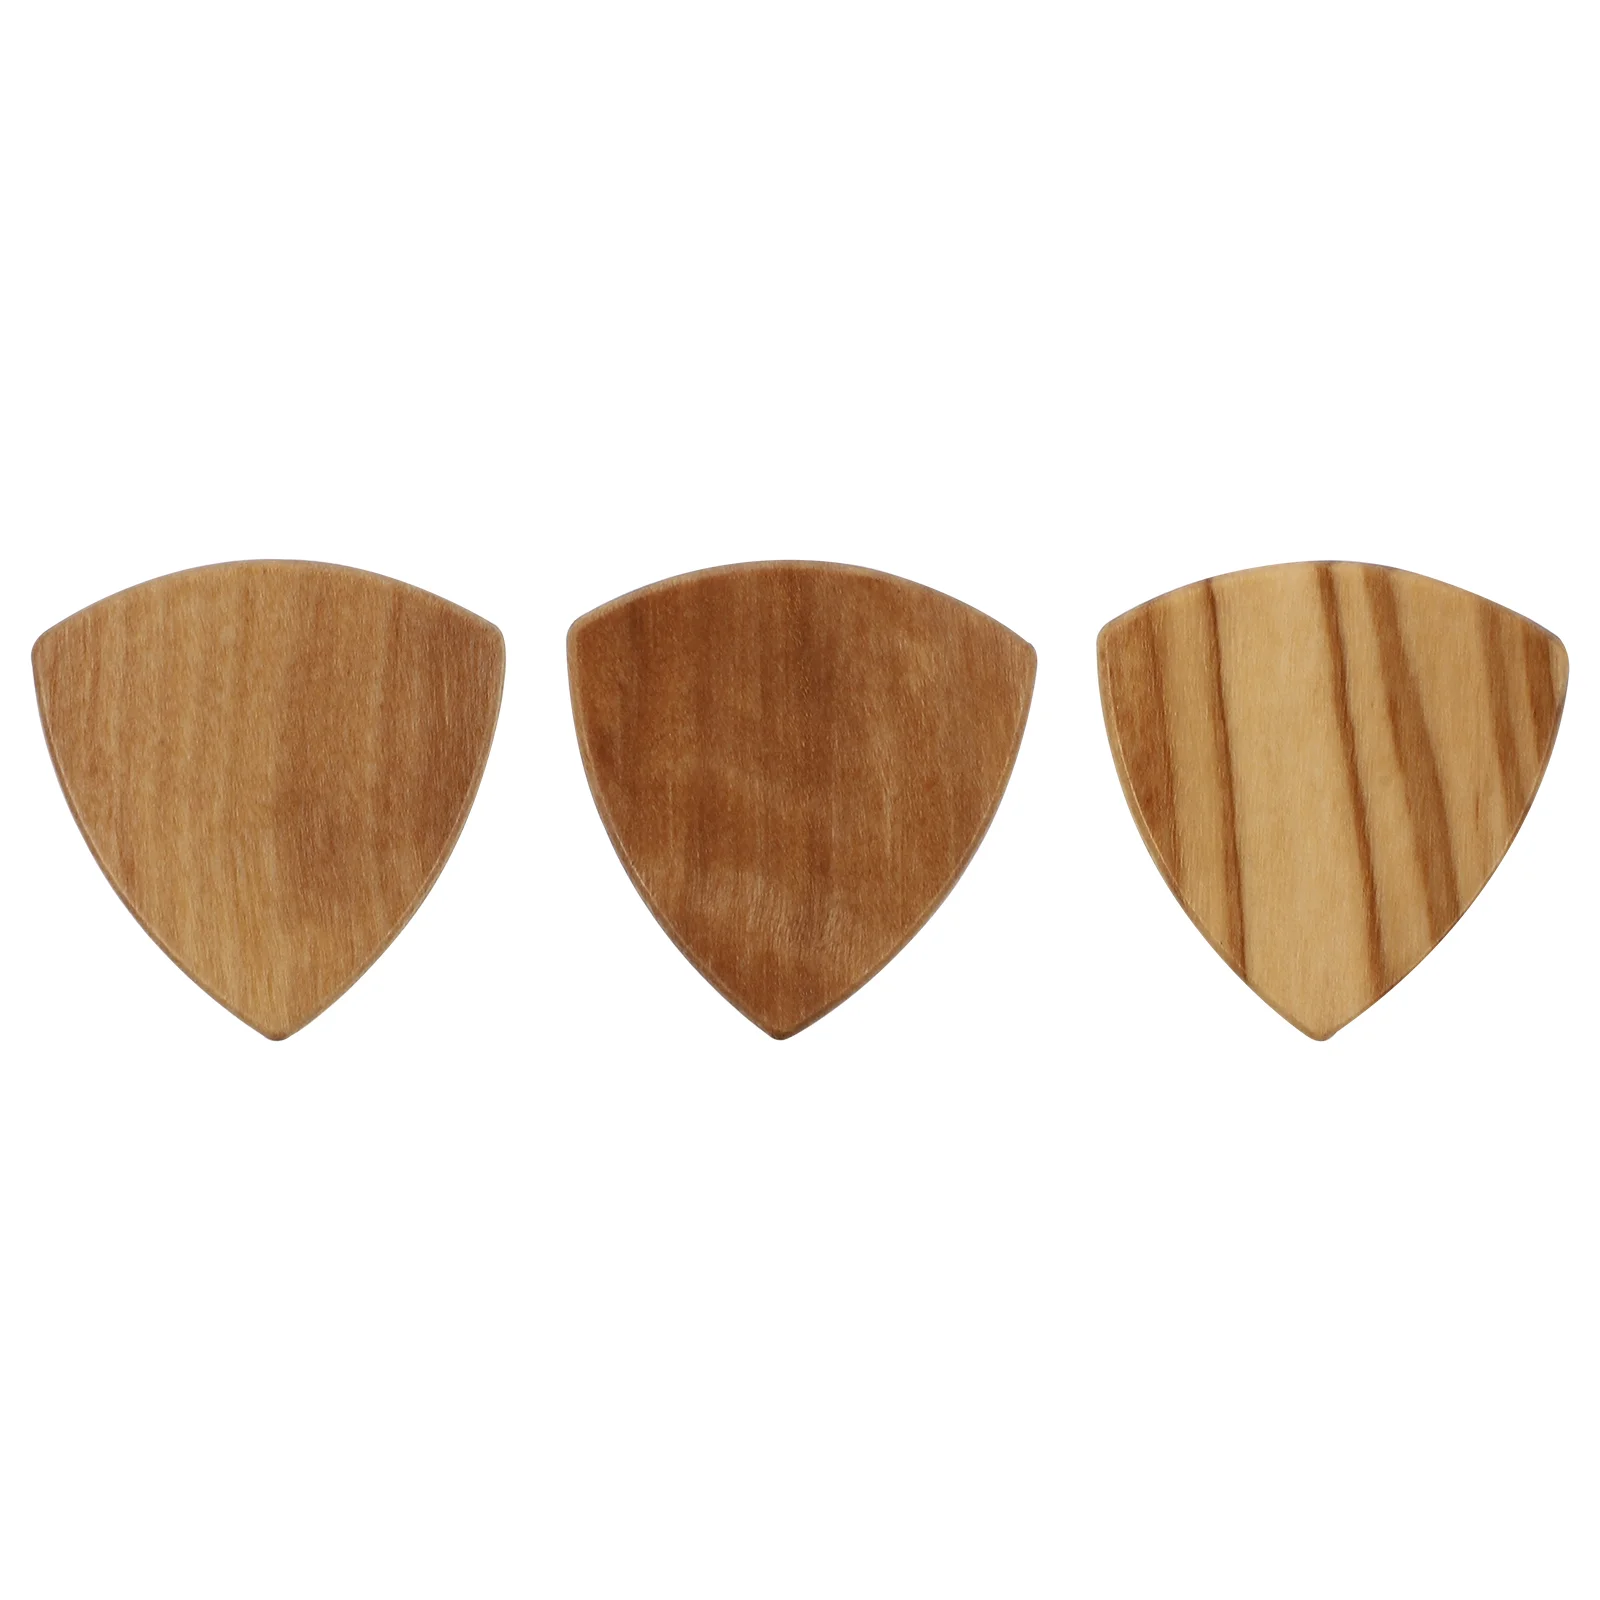 

3 шт. креативные деревянные гитарные медиаторы, практичные аксессуары для гитары (деревянный цвет)